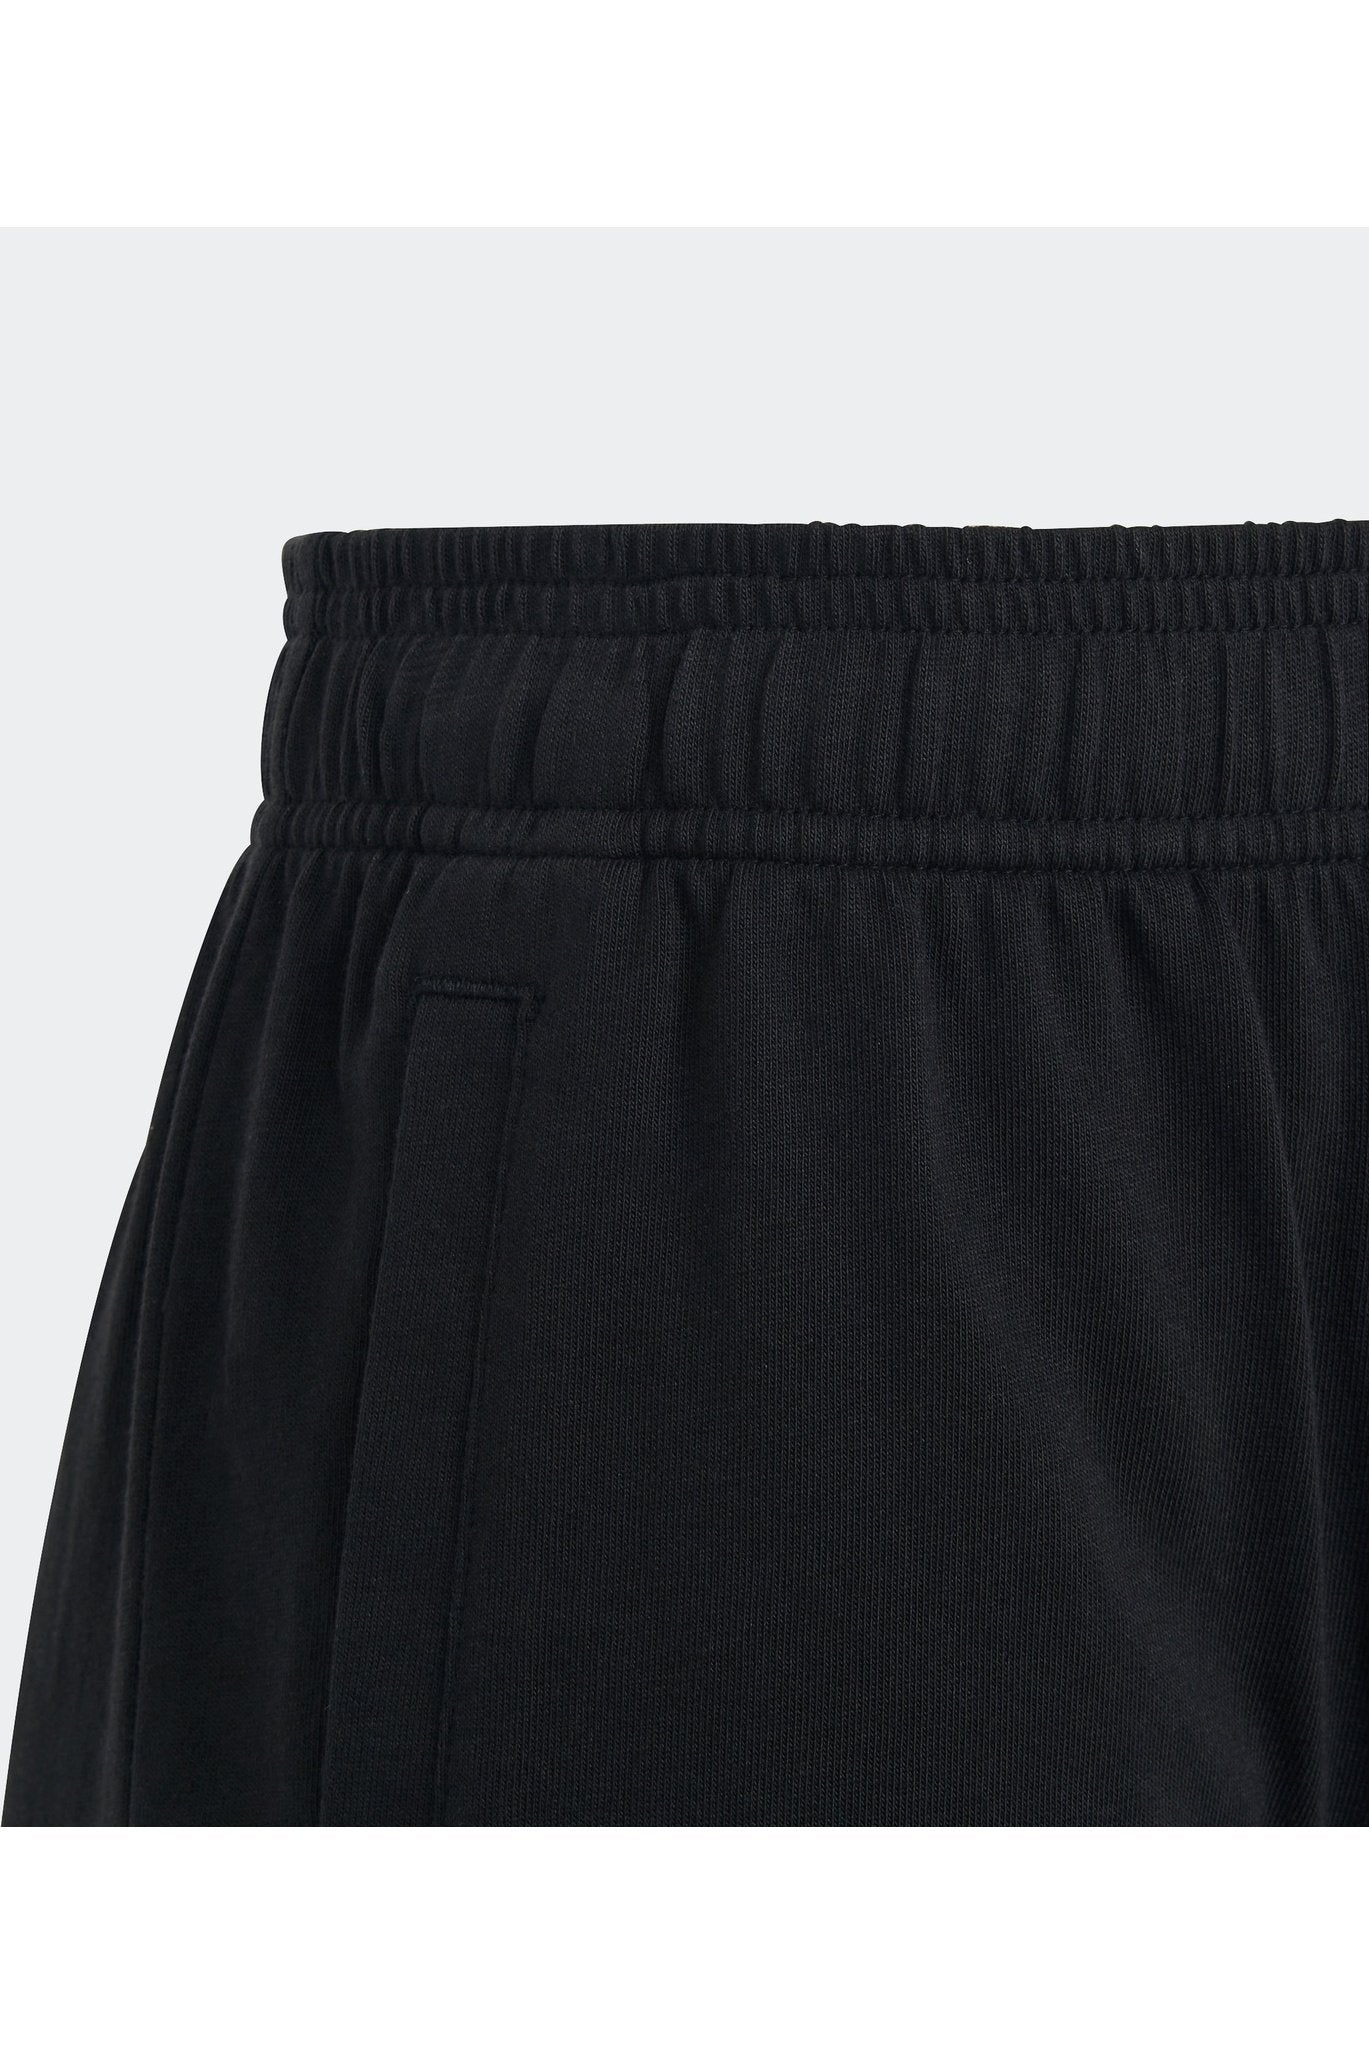 מכנסיים קצרים לנוער ESSENTIALS BIG LOGO בצבע שחור ולבן